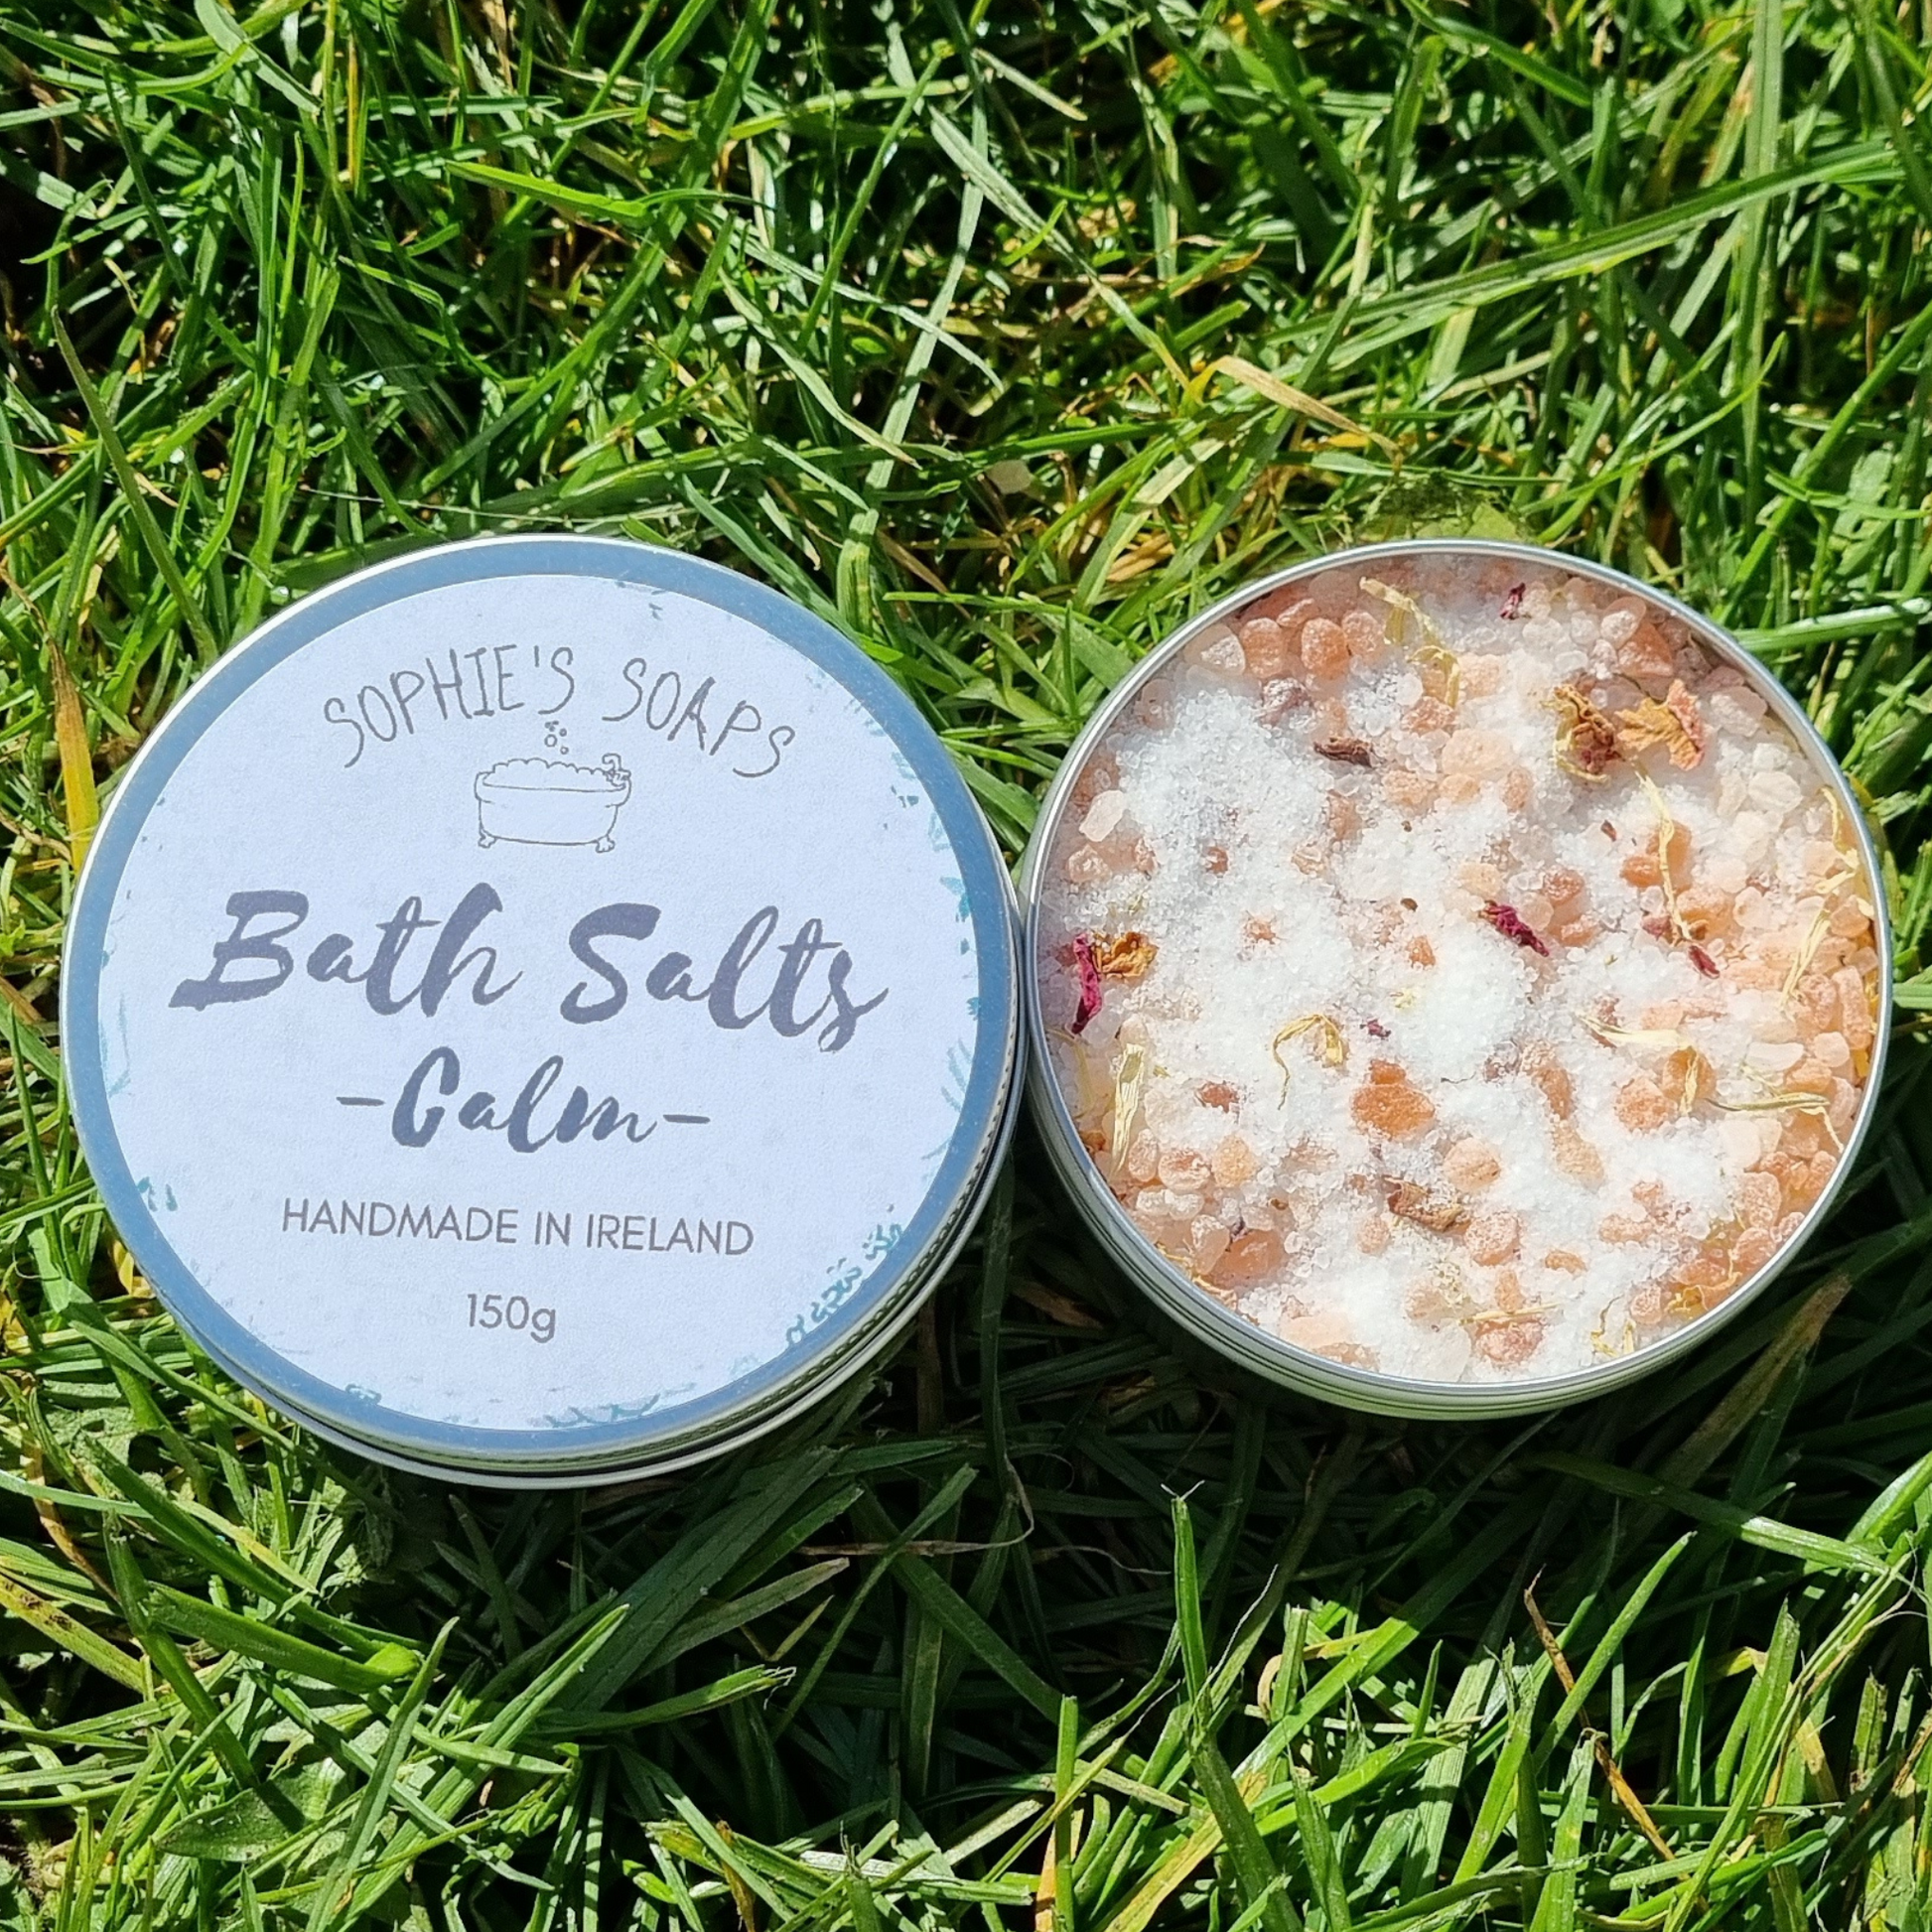 Floral Bath Salts - Calm - Sophie's Soaps